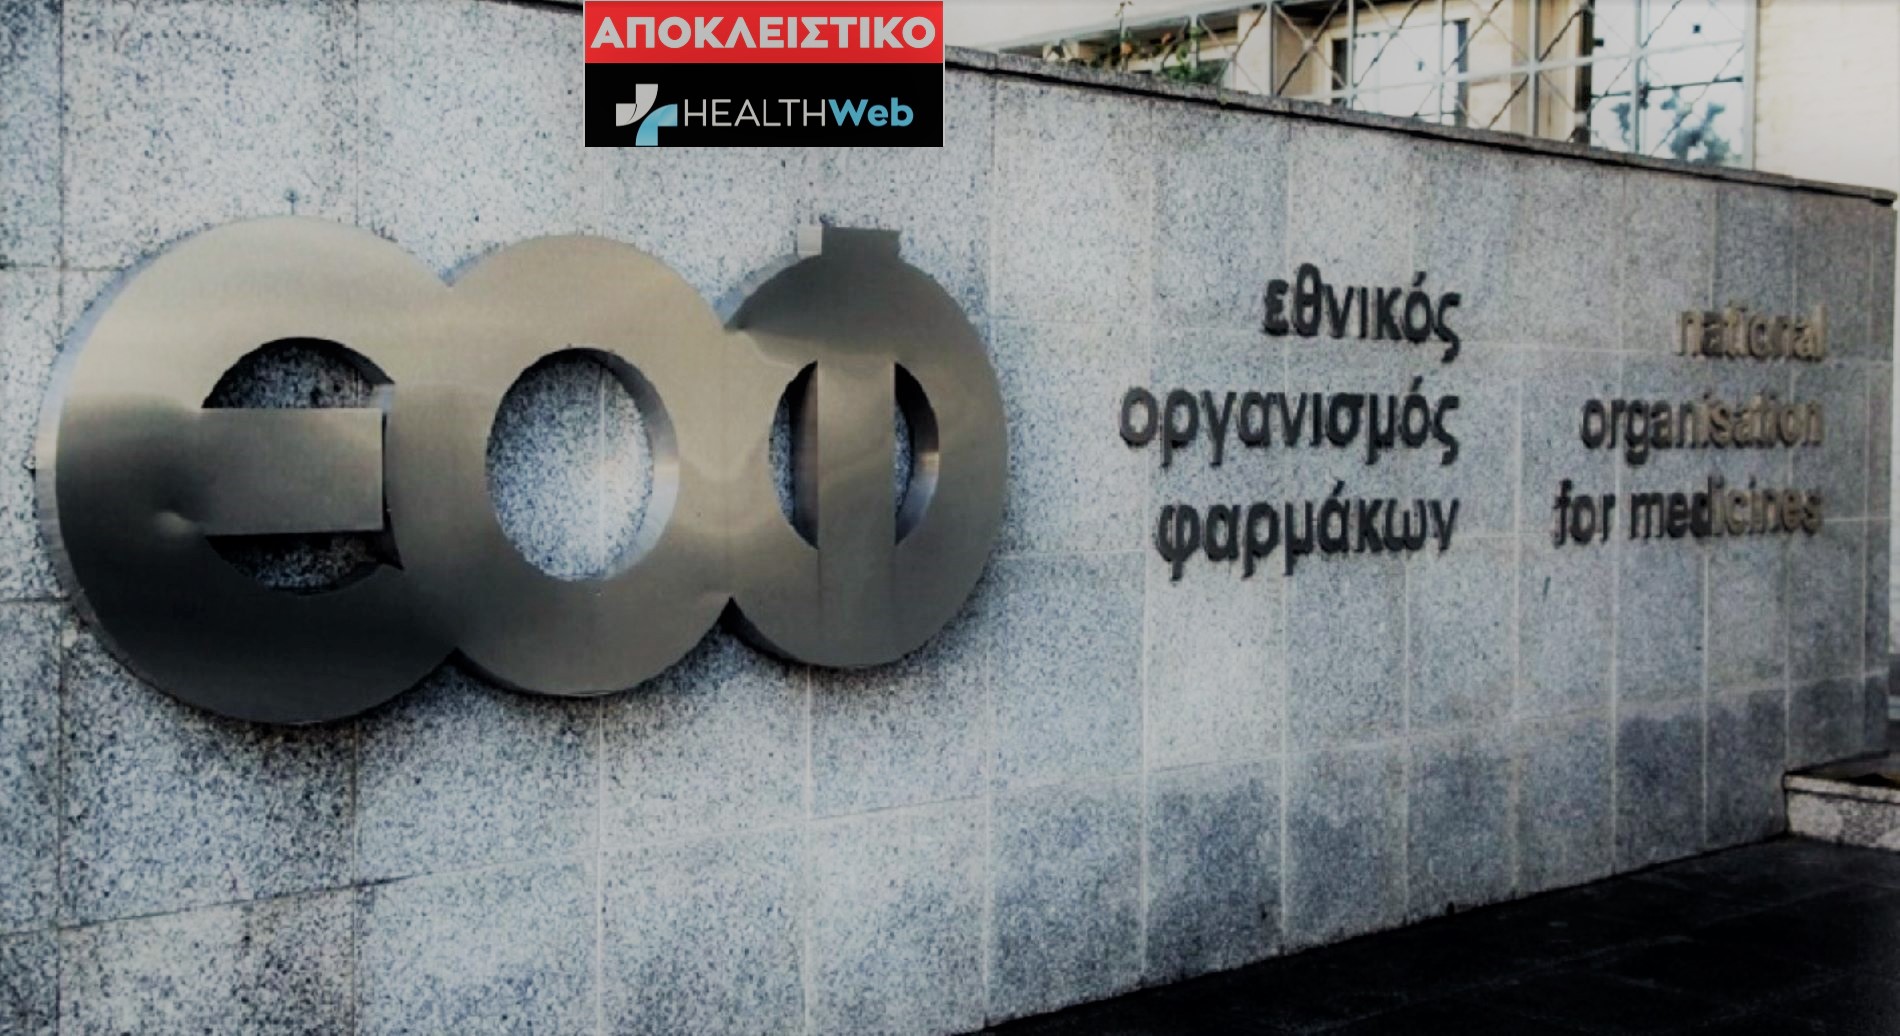 Αποκλειστικό:Ο  Ελευθέριος Πάλλης είναι ο νέος αντιπρόεδρος του ΕΟΦ